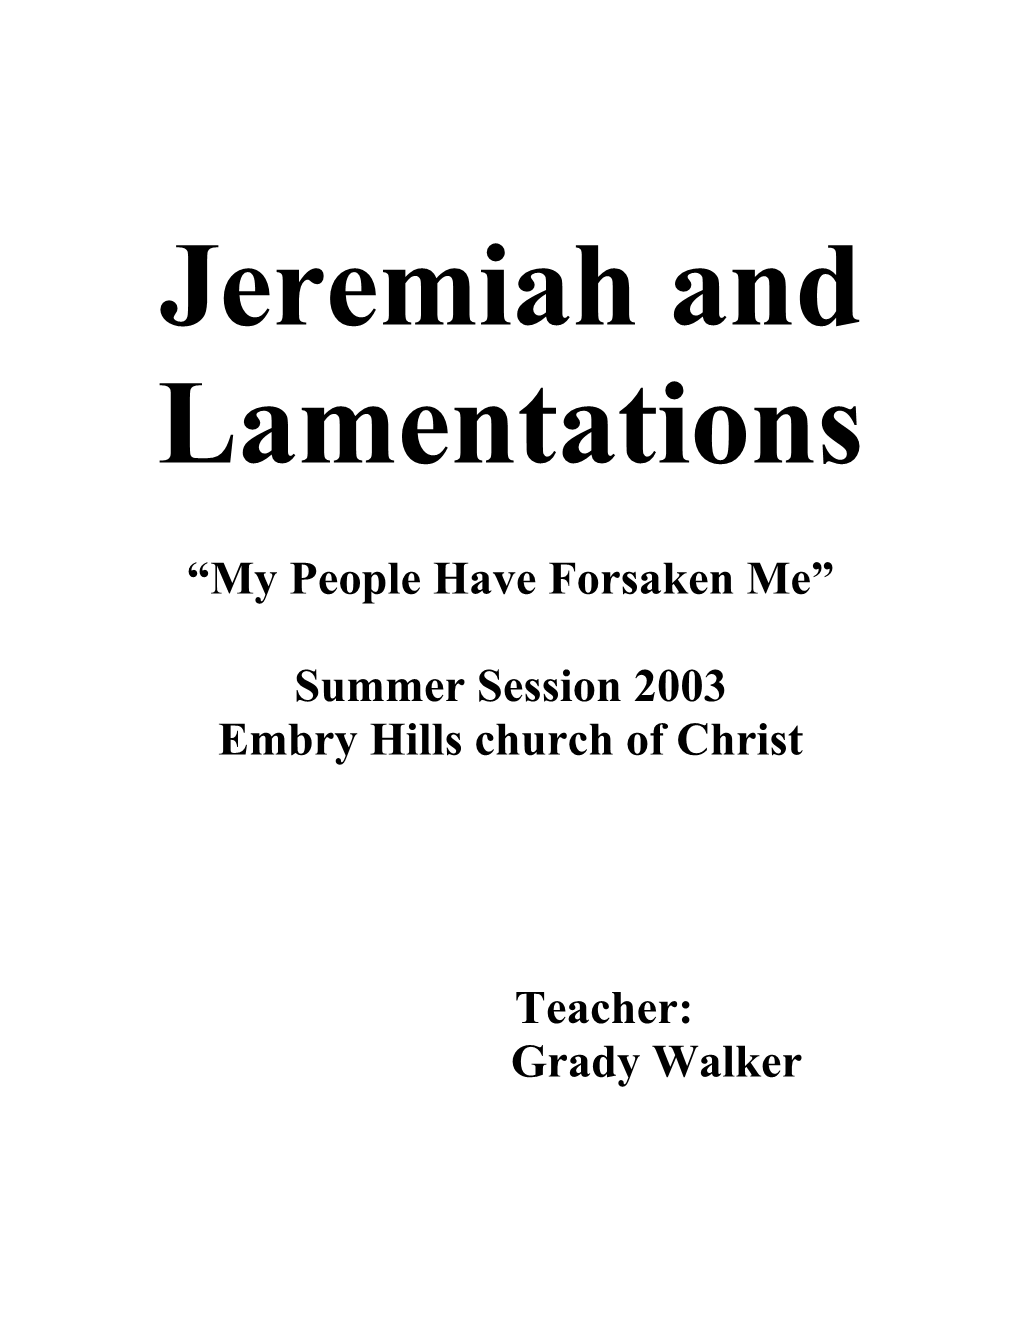 Book of Daniel Winter Session 2003